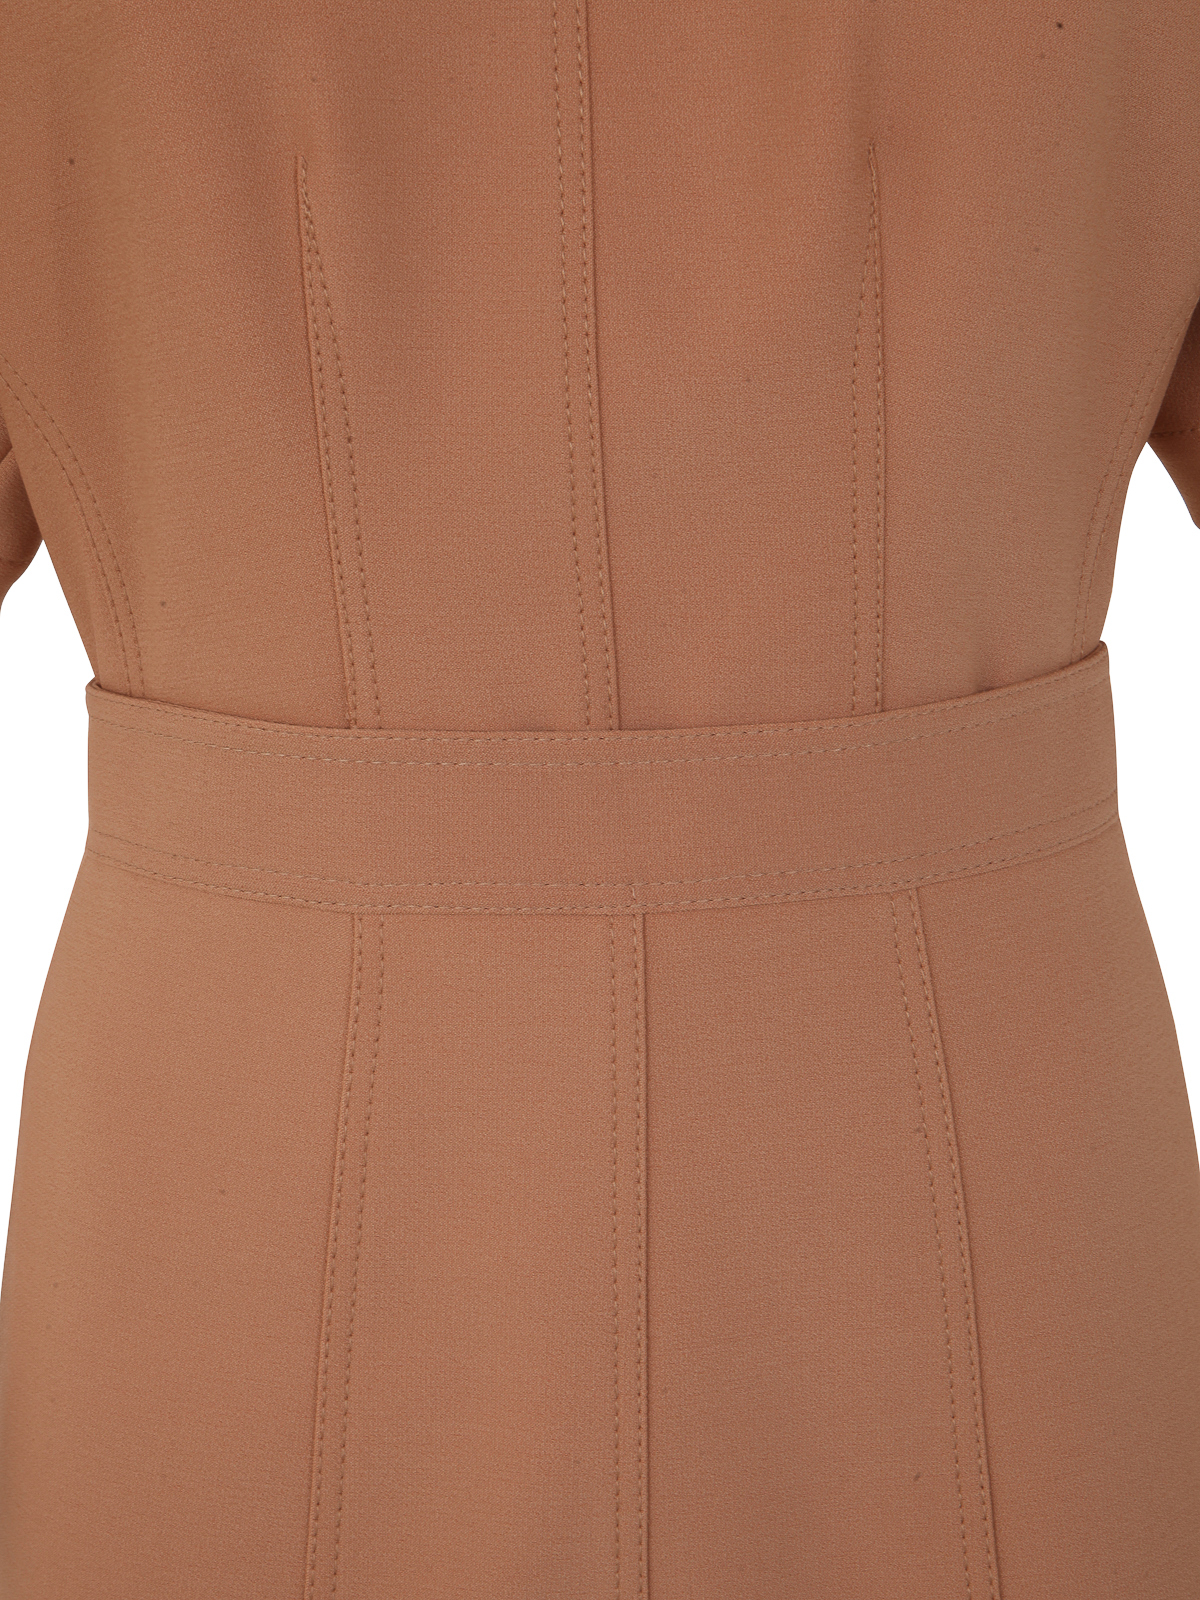 Shop N°21 Round Neck Short Sleeve Dress In Brown